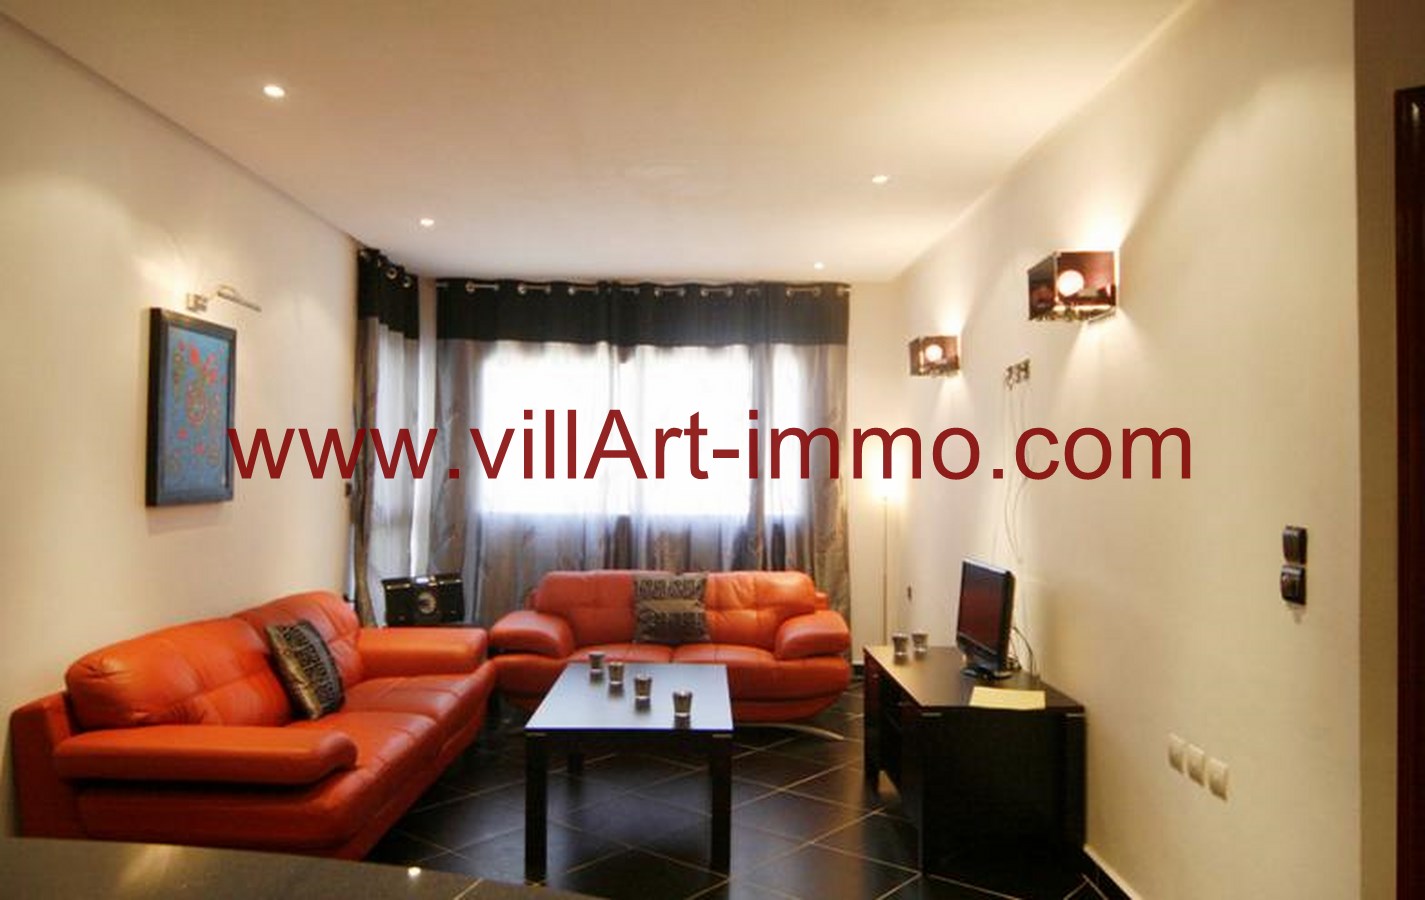 3-Location-Appartement-Meublé-Tanger-Salon-L709-Villart immo